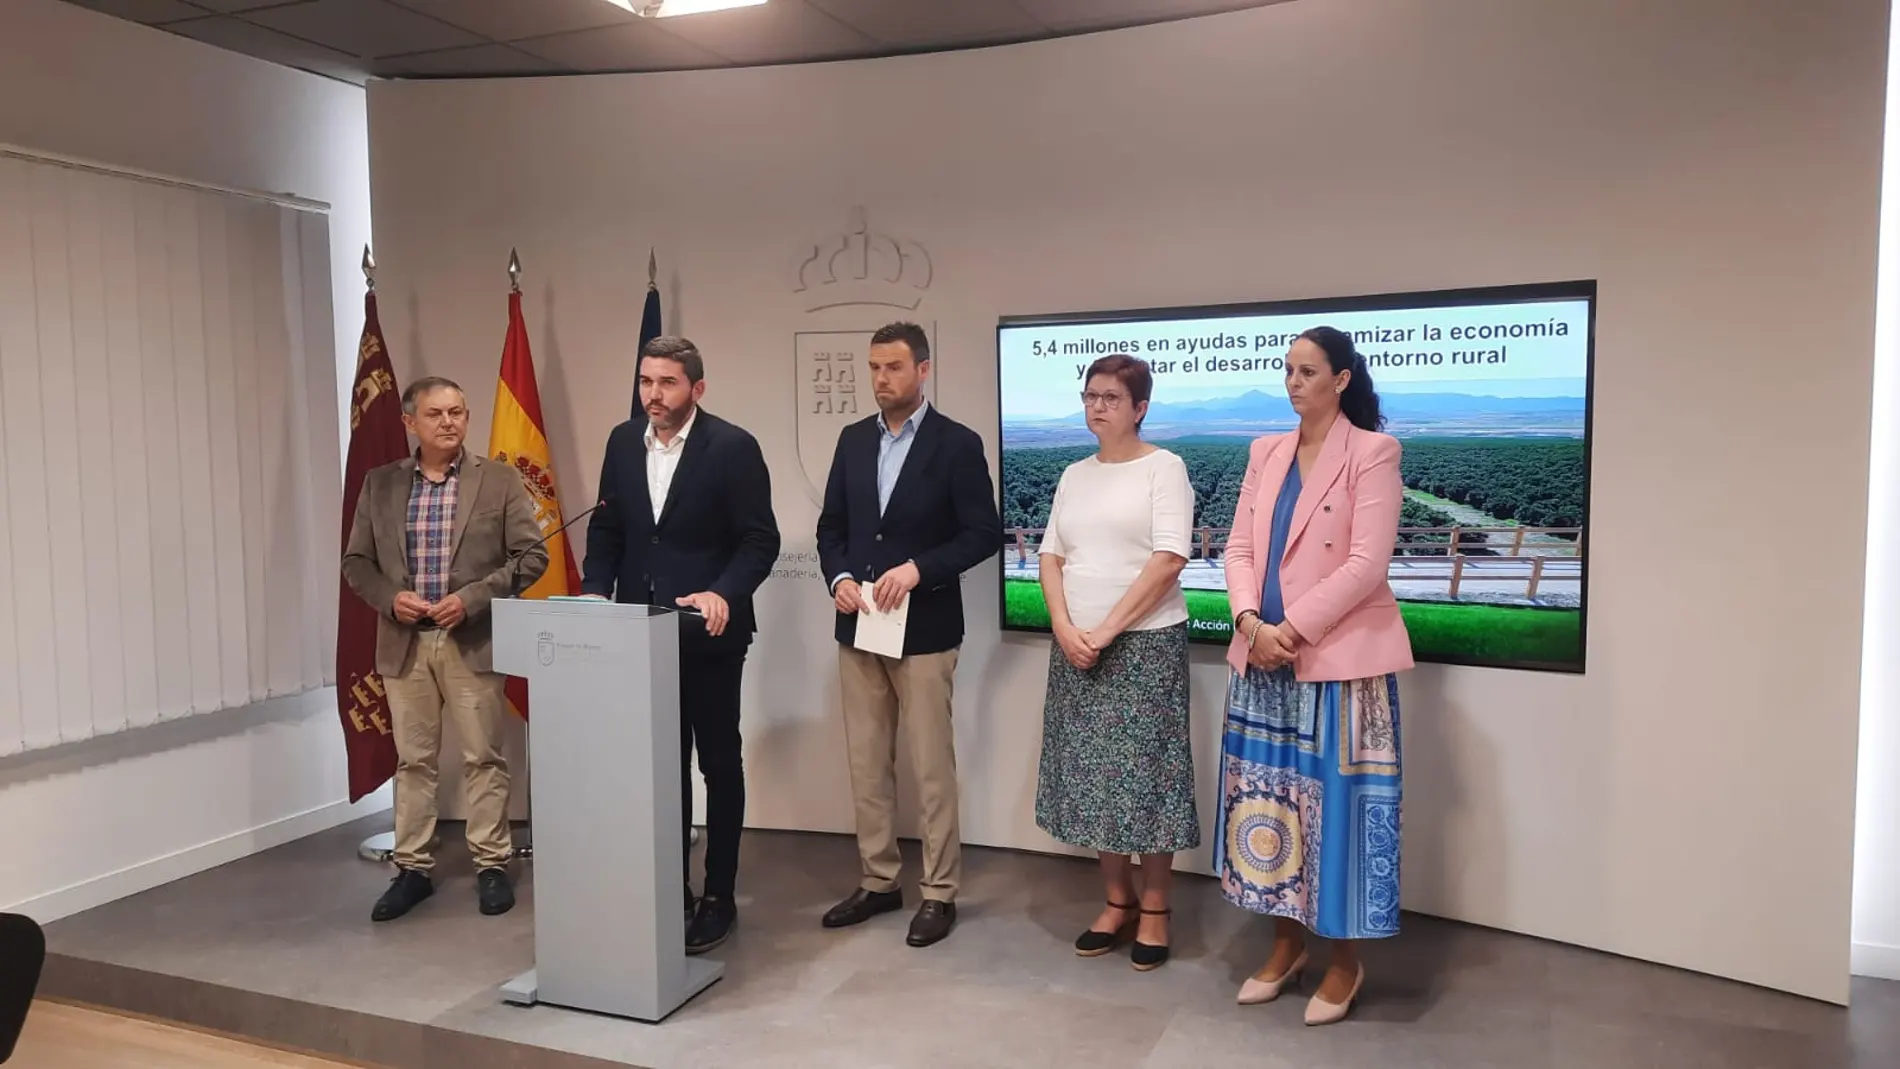 El consejero, acompañado por los alcaldes de Caravaca de la Cruz, Jumilla, Fuente Álamo y Ojós, representantes de los cuatro Grupos de Acción Local.